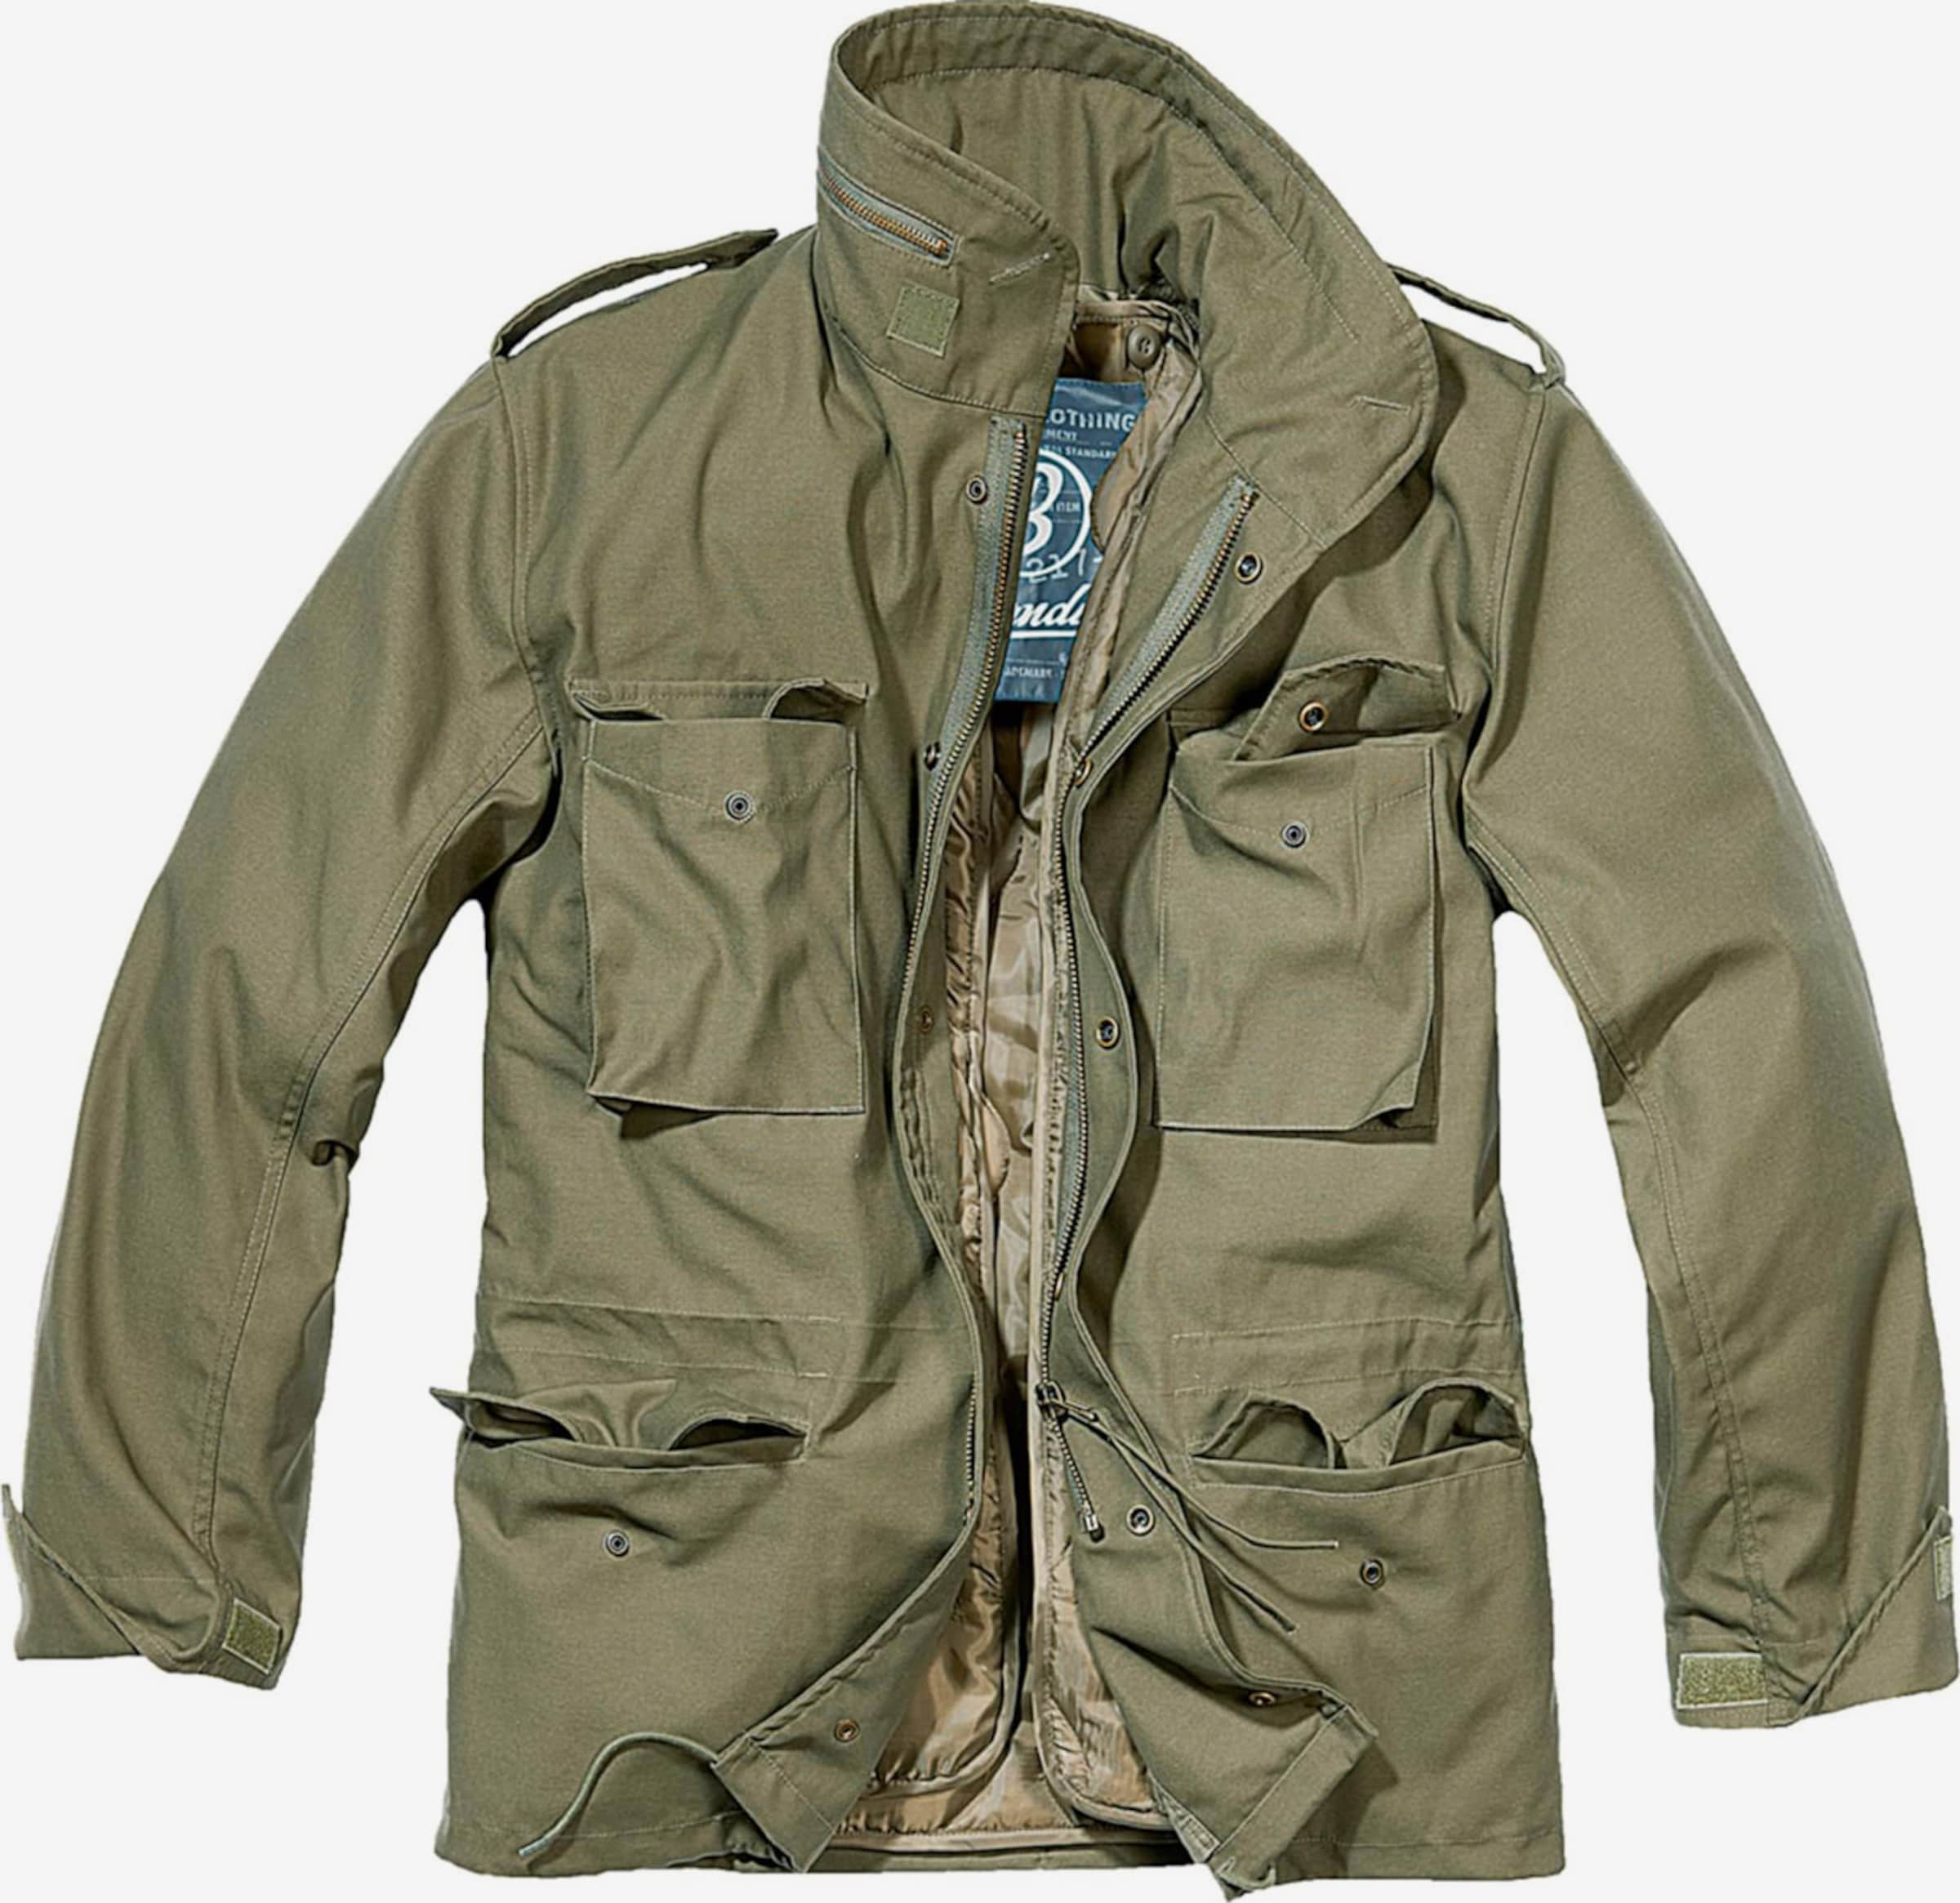 Купить куртку мужскую 58